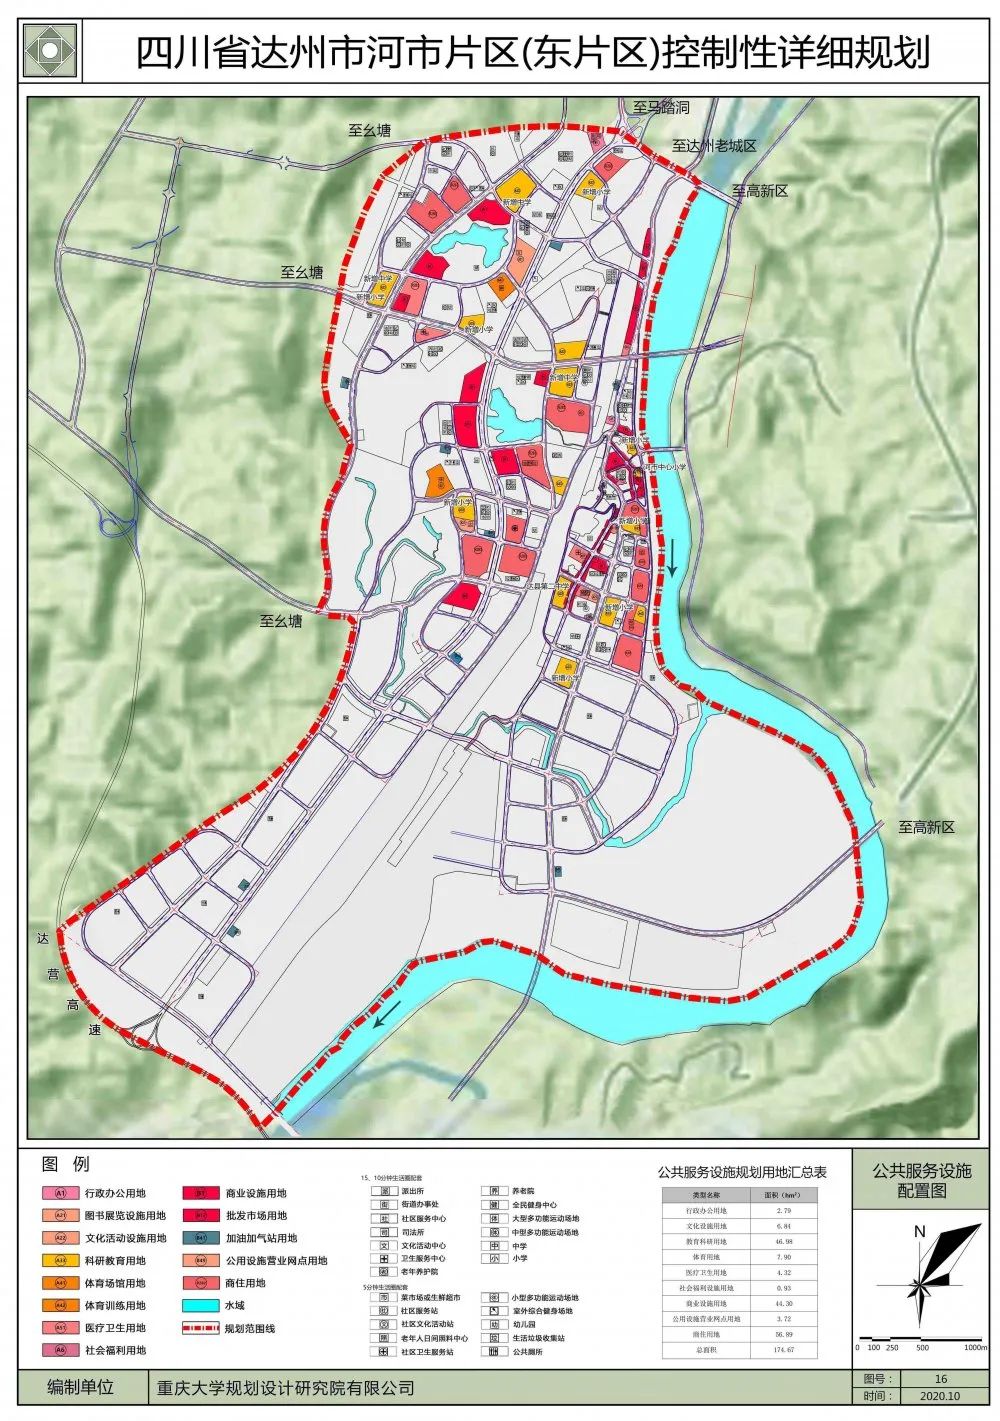 正在公示达州市河市片区东片区控制性详细规划来了